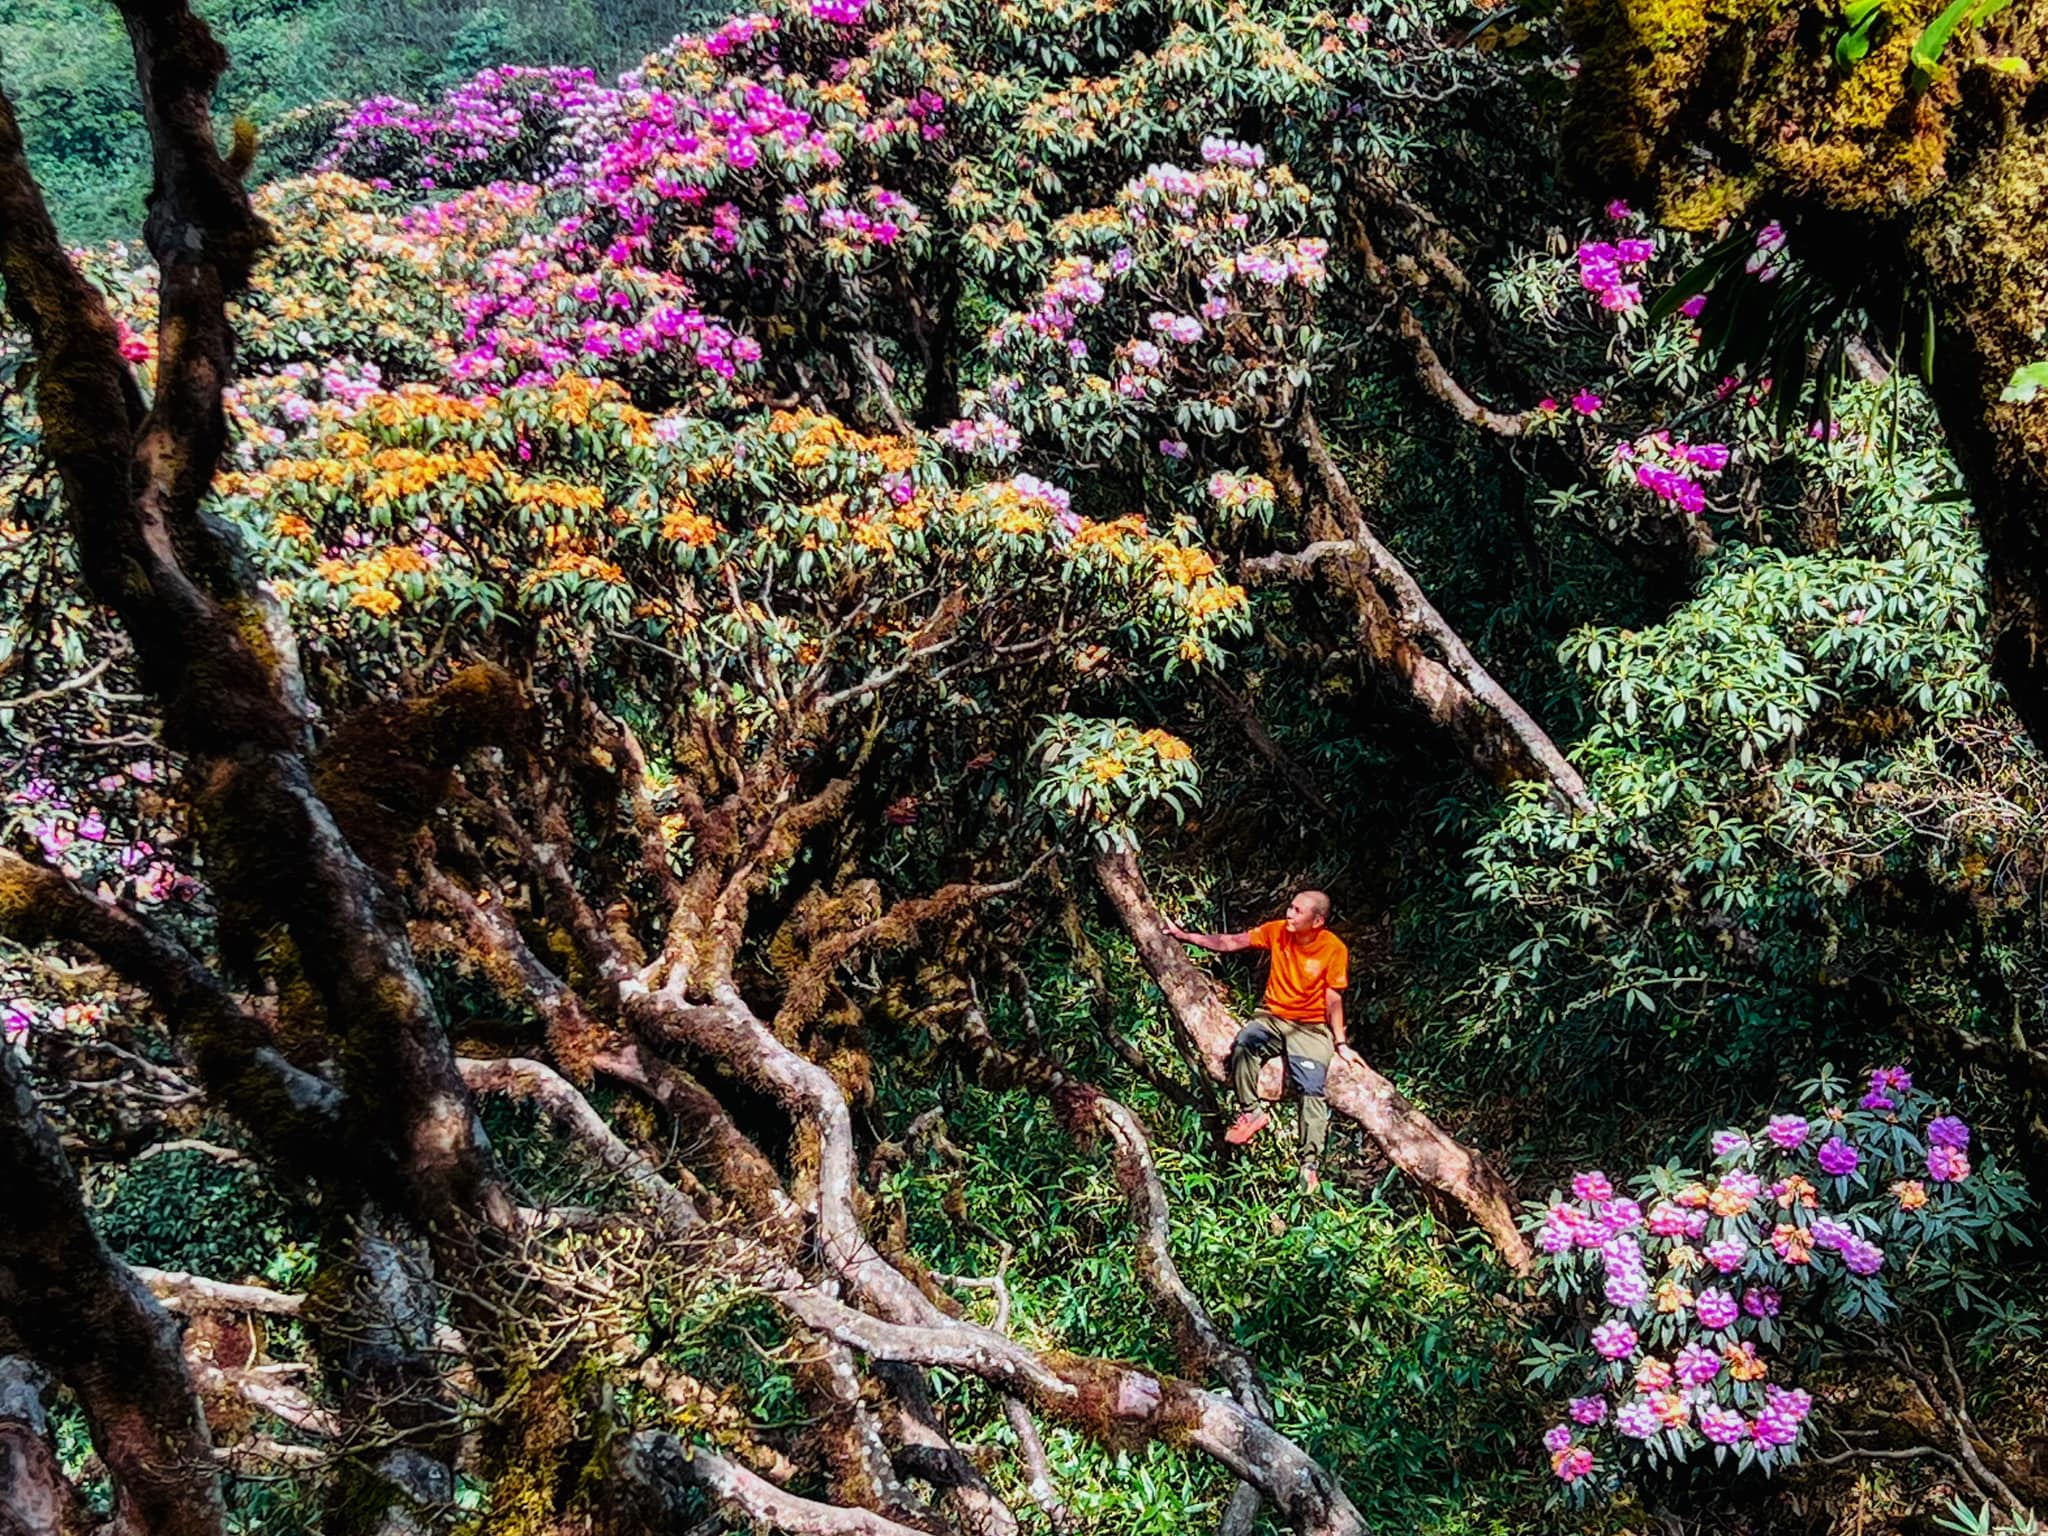 Sườn núi Putaleng thuộc các xã Hồ Thầu, Giang Ma, Tả Lèng với thảm thực vật vô cùng đa dạng. Trên đường leo núi, du khách được trải nghiệm nhiều dạng địa hình lẫn các kiểu rừng cây khác nhau khiến mỗi bước đi như một khám phá mới. 